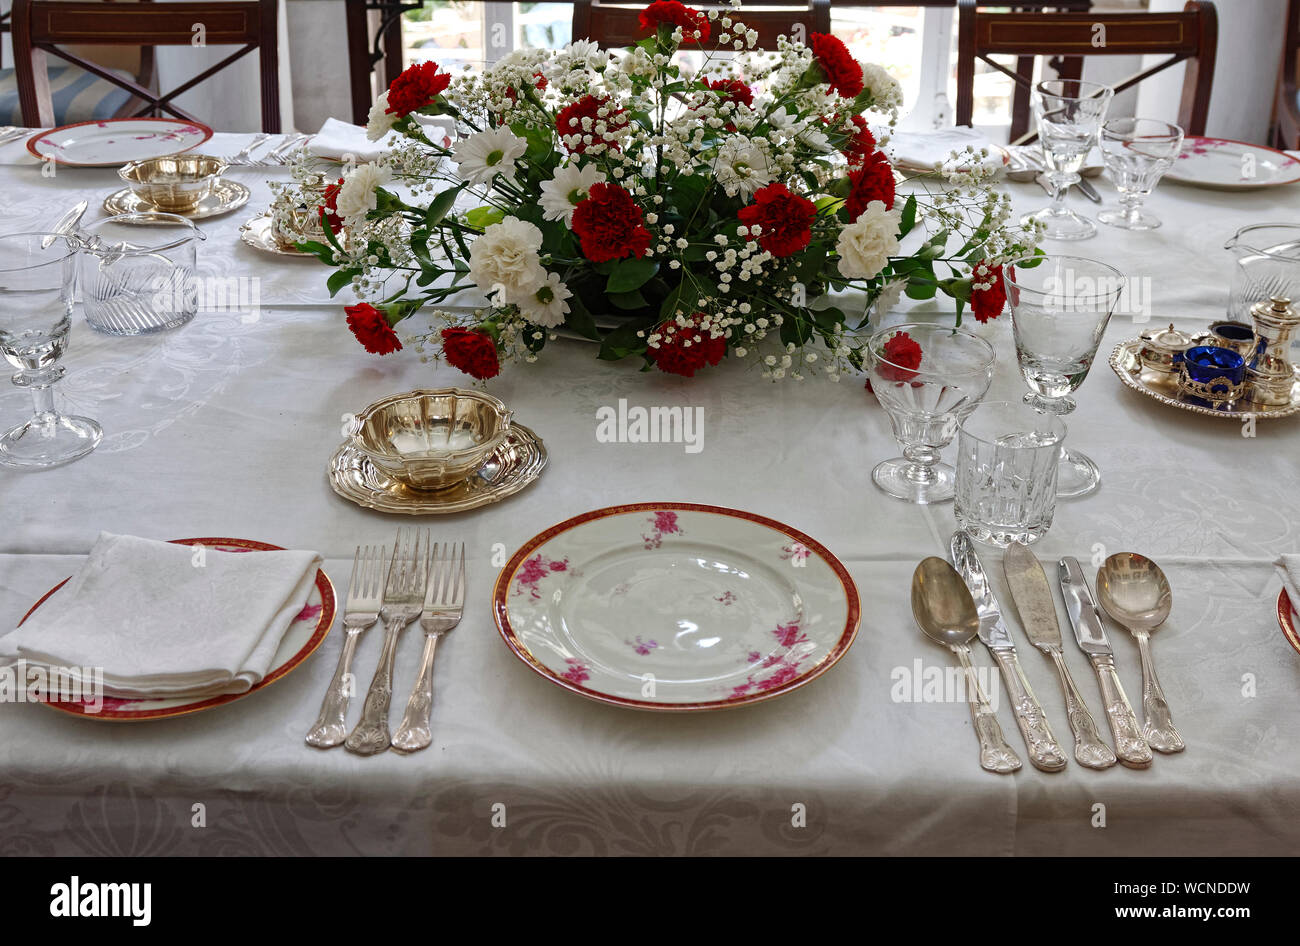 Formale Esszimmer Tisch; Geschirr und Besteck; Blumen; Glaswaren, Casa Rocca Piccola; 16. Jahrhundert; Europa; Valletta; Malta; Feder; horizontal Stockfoto